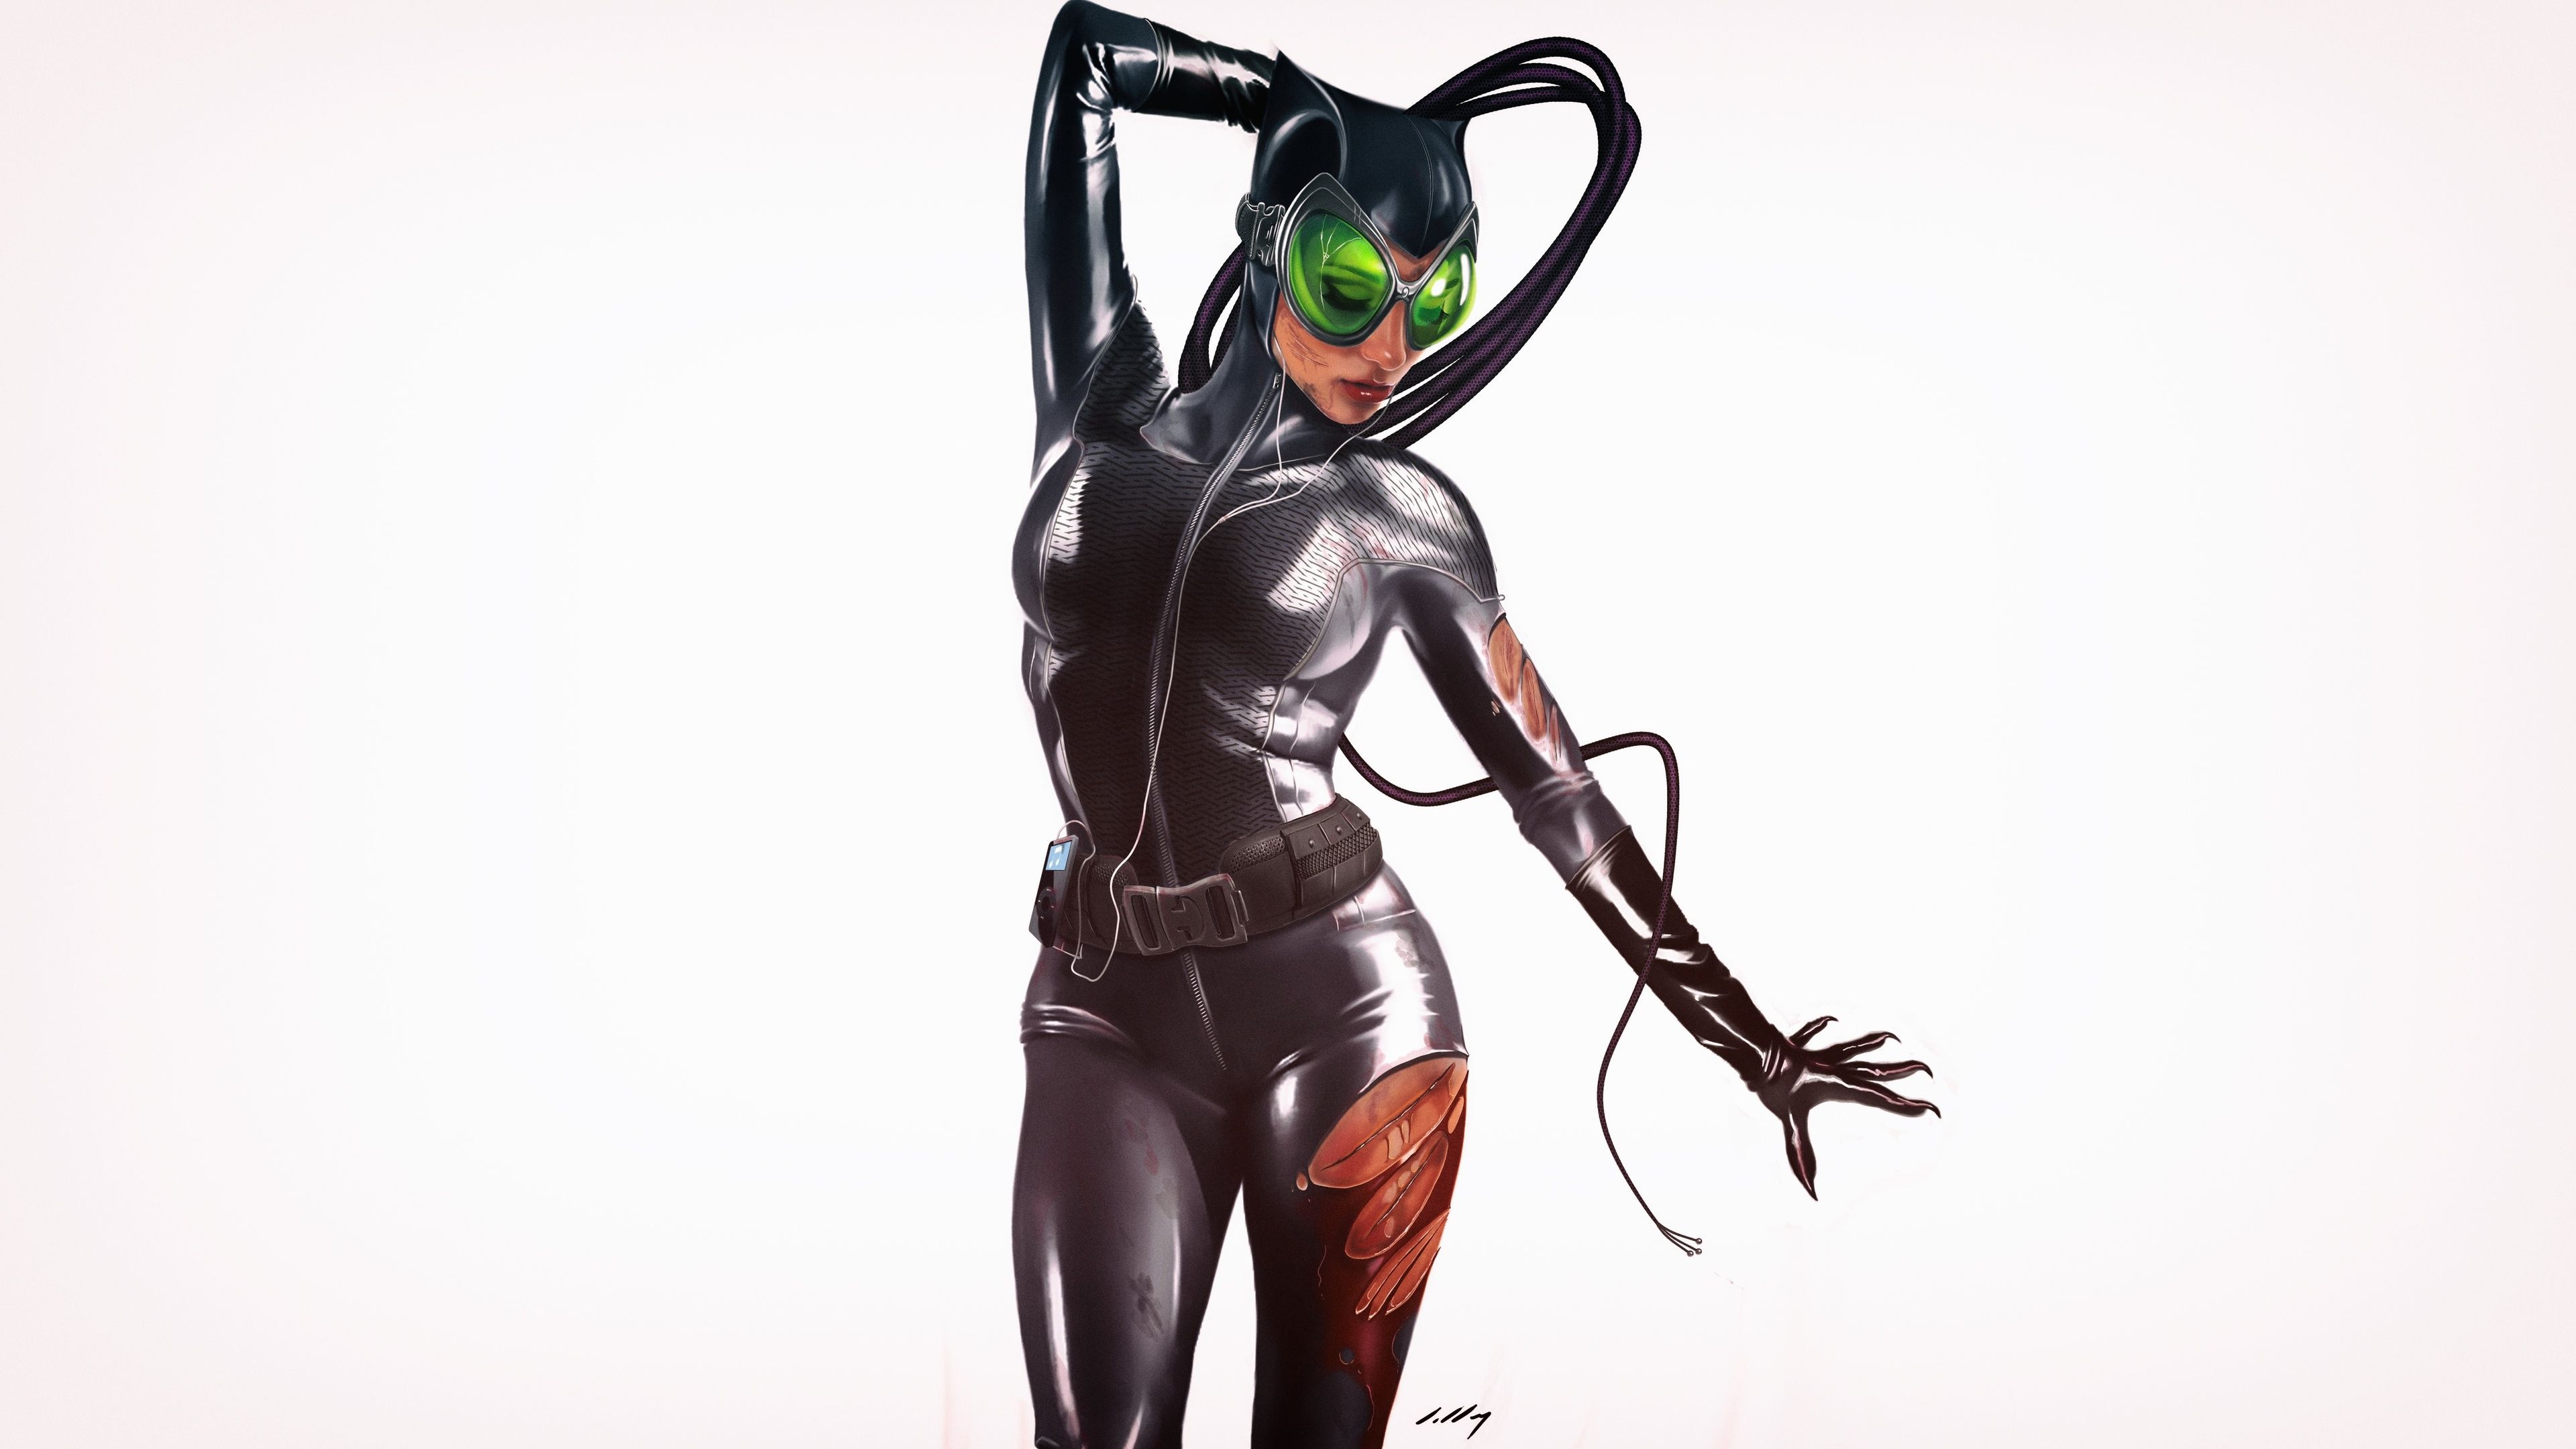 Catwoman 4k Art supervillain wallpaper, superheroes wallpaper, digital art wallpaper, wallpaper, catwoman wallp. Superhero, Catwoman, Art wallpaper